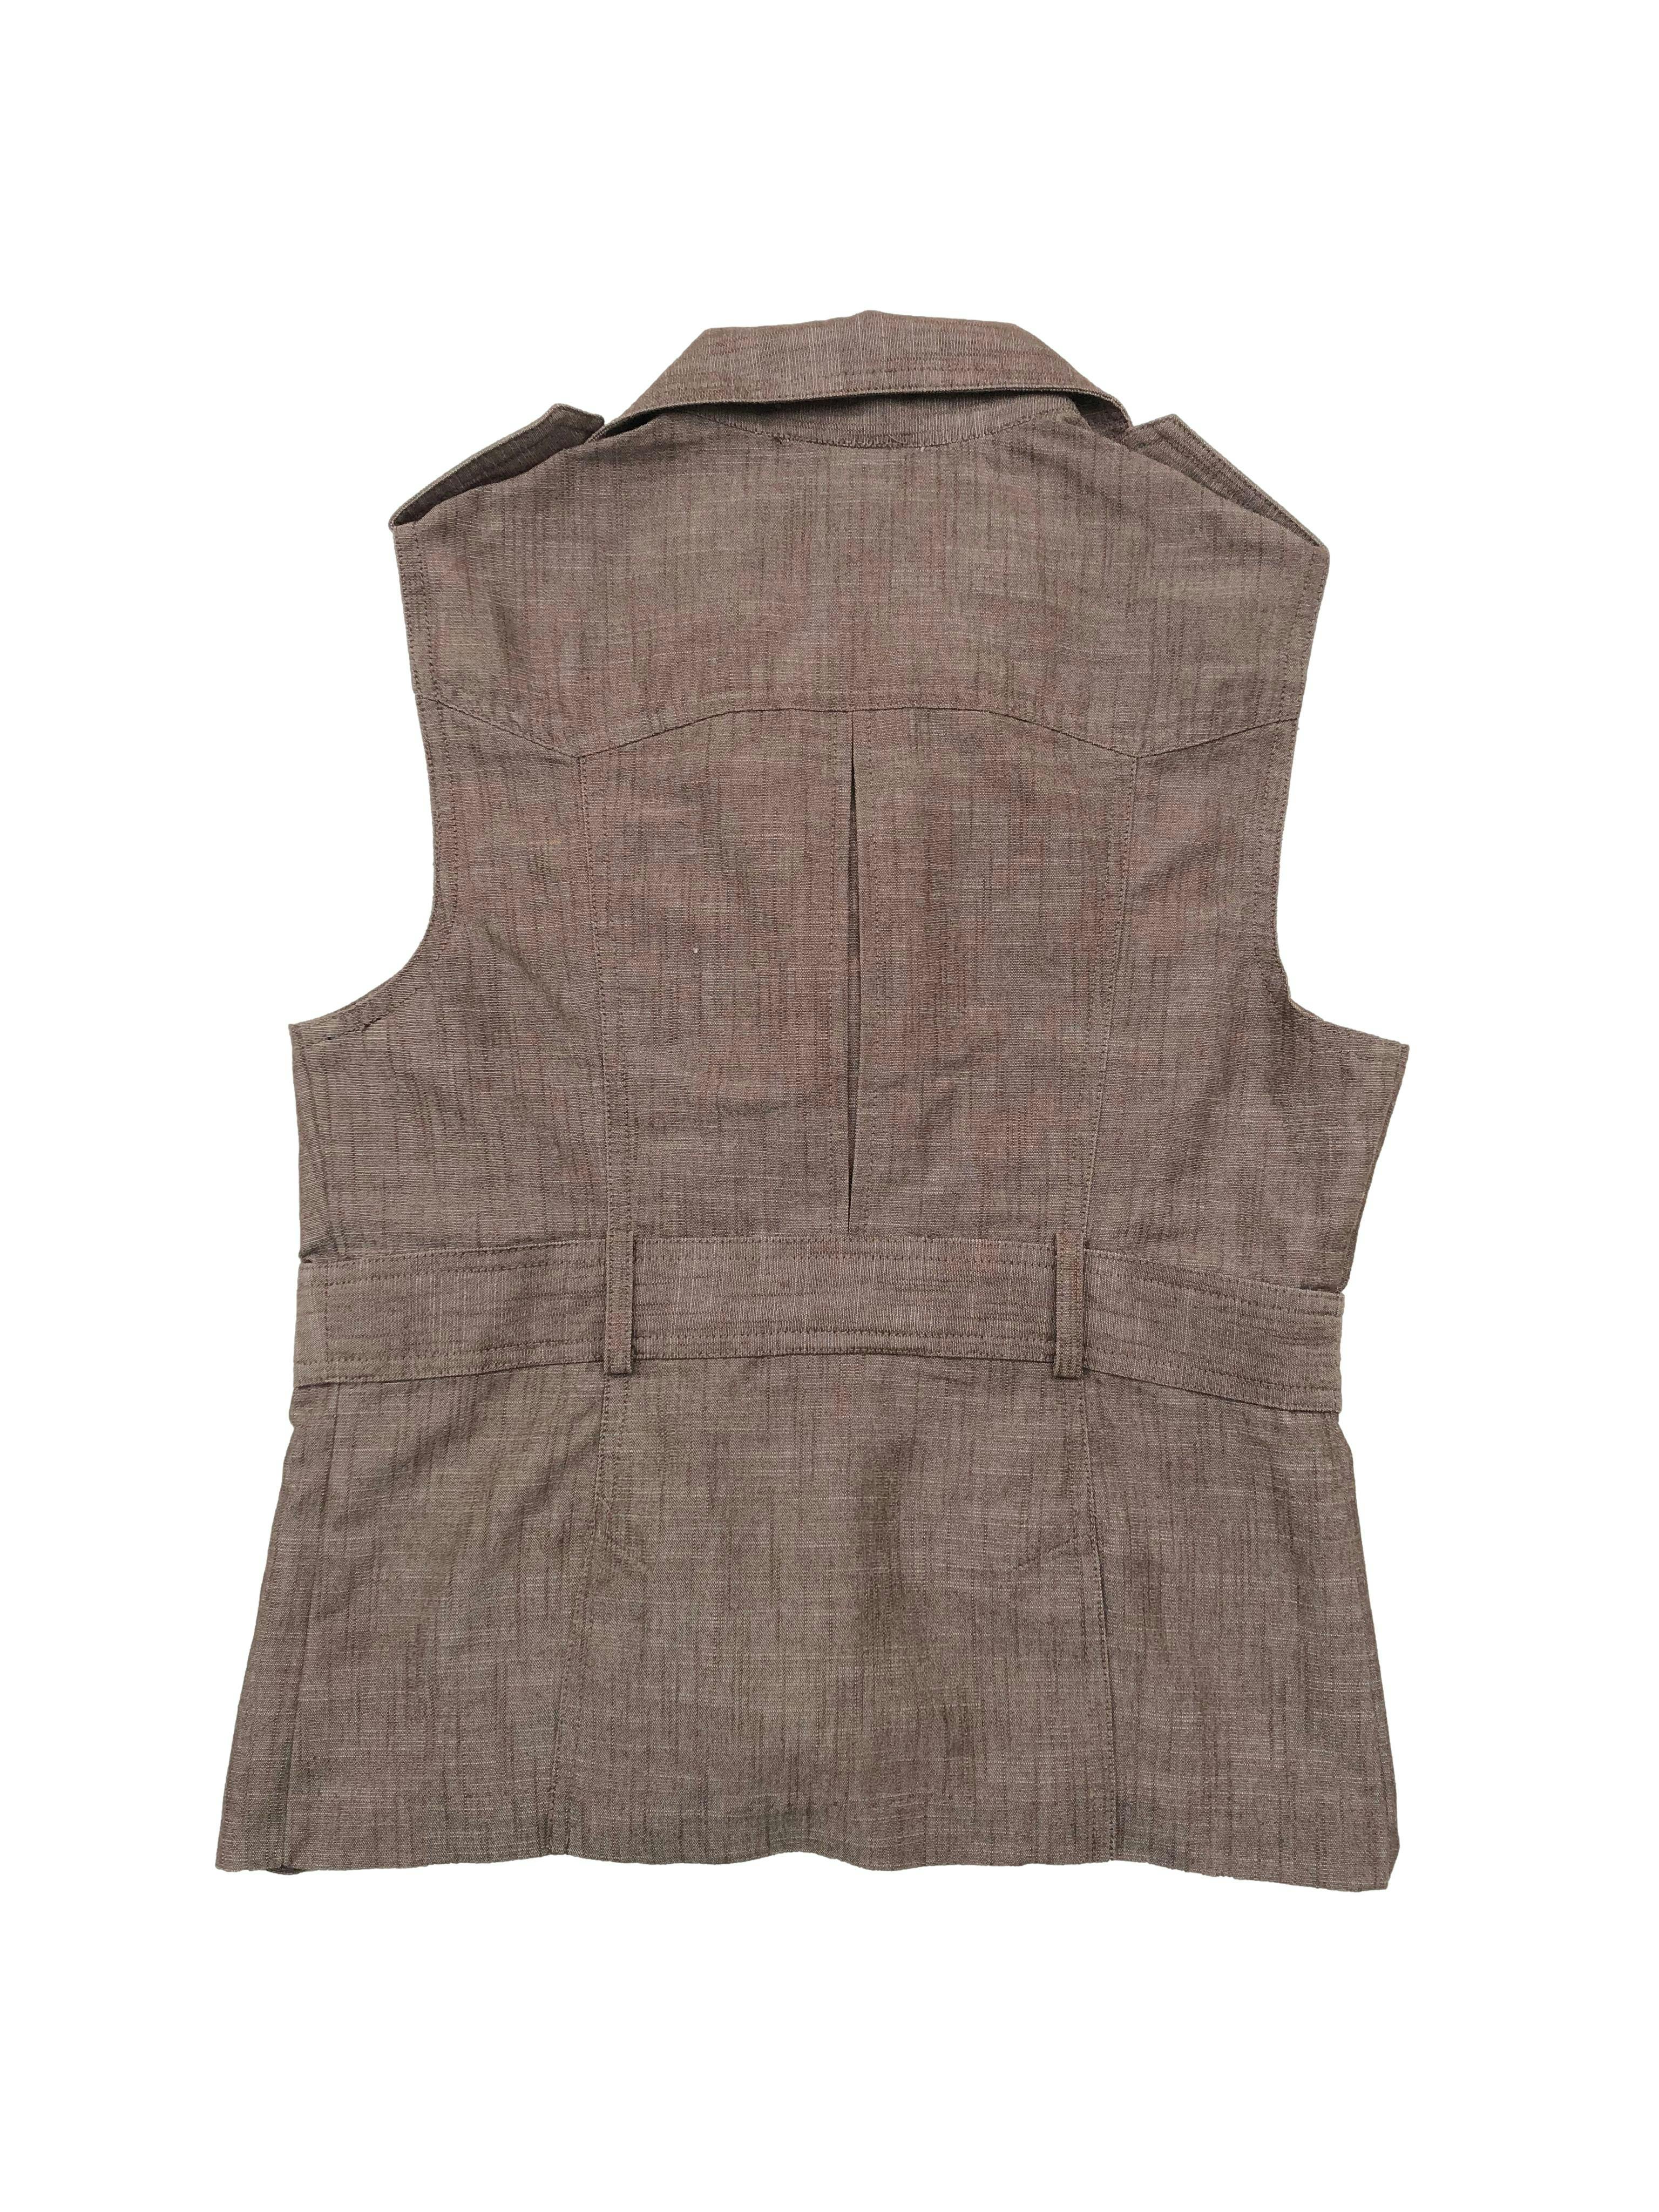 Chaleco marrón de textura tipo lino con bolsillos y botones delanteros. Busto 90cm Largo 52cm